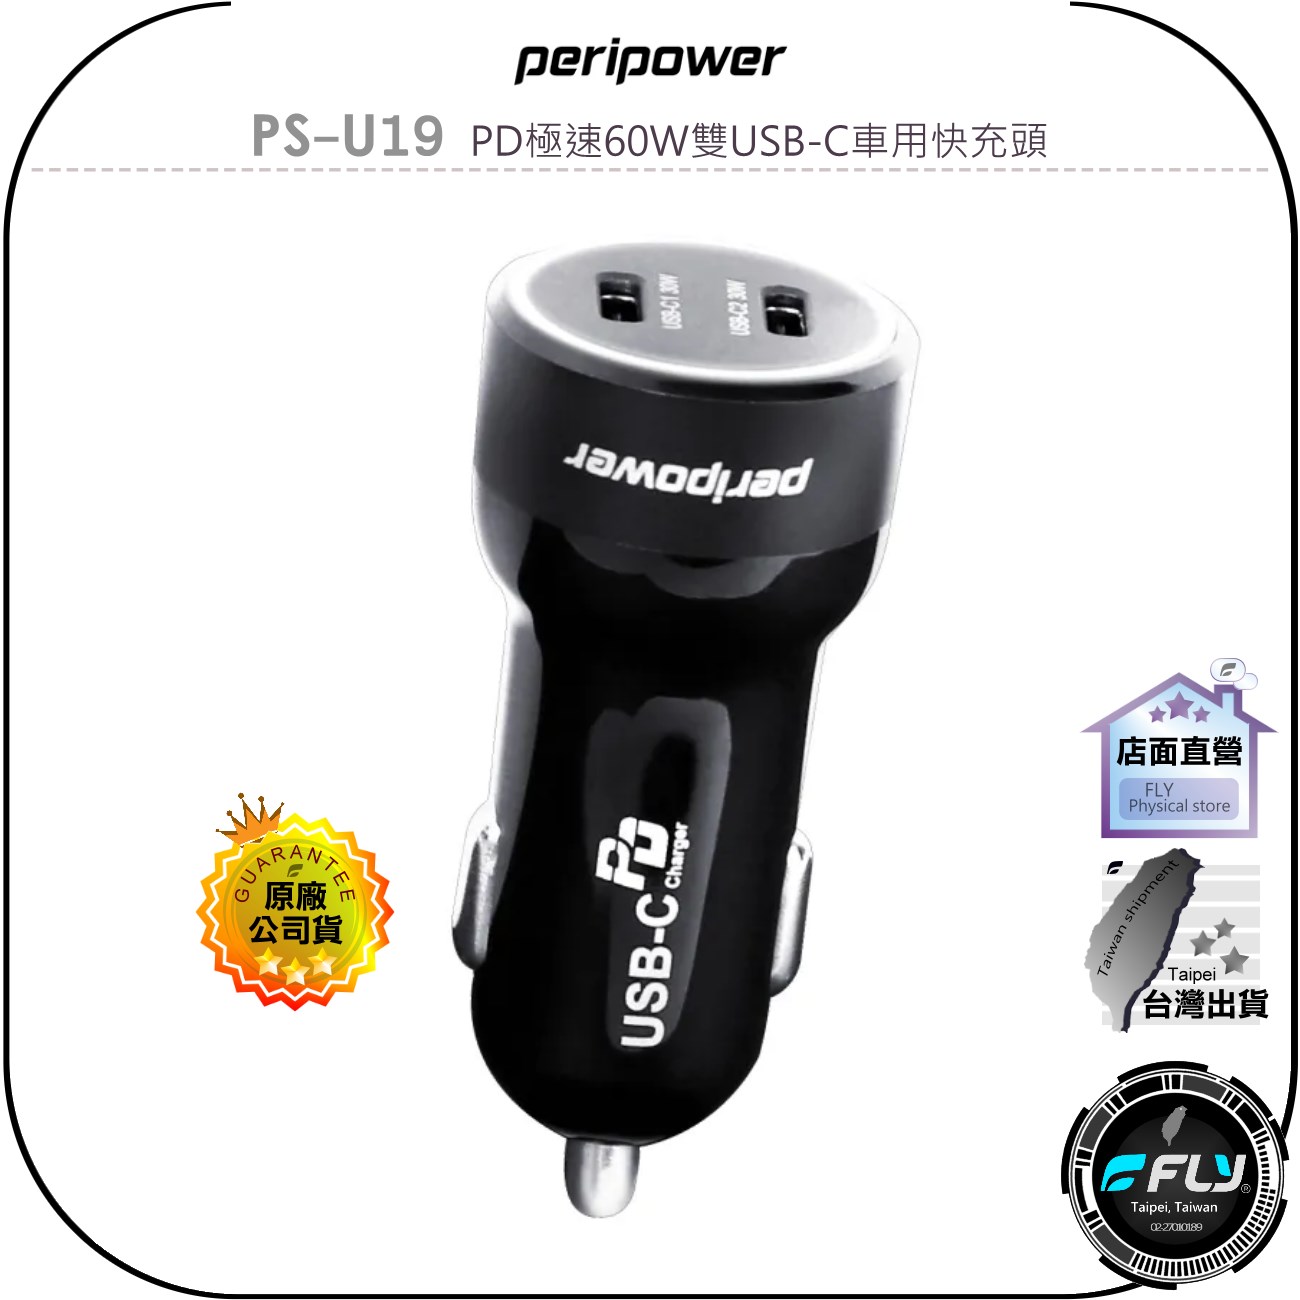 【飛翔商城】peripower PS-U19 PD極速60W雙USB-C車用快充頭◉公司貨◉TYPE-C車充頭◉點煙孔